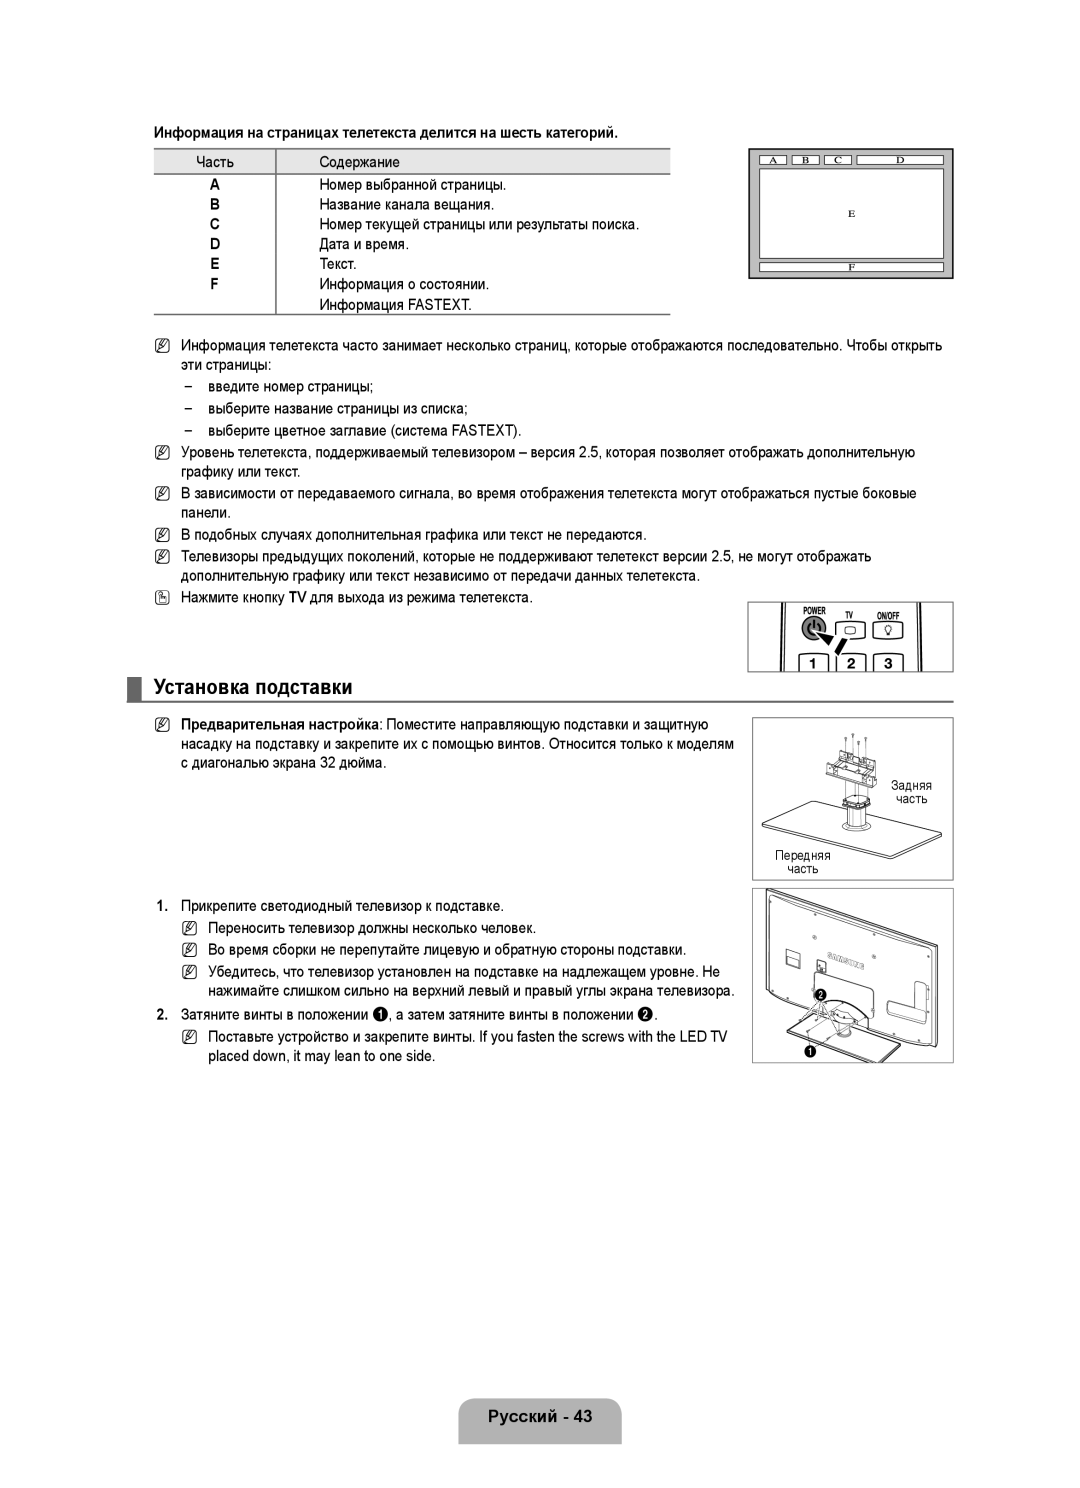 Samsung UE40B6000VWXXU manual Установка подставки, Информация на страницах телетекста делится на шесть категорий, Русский 